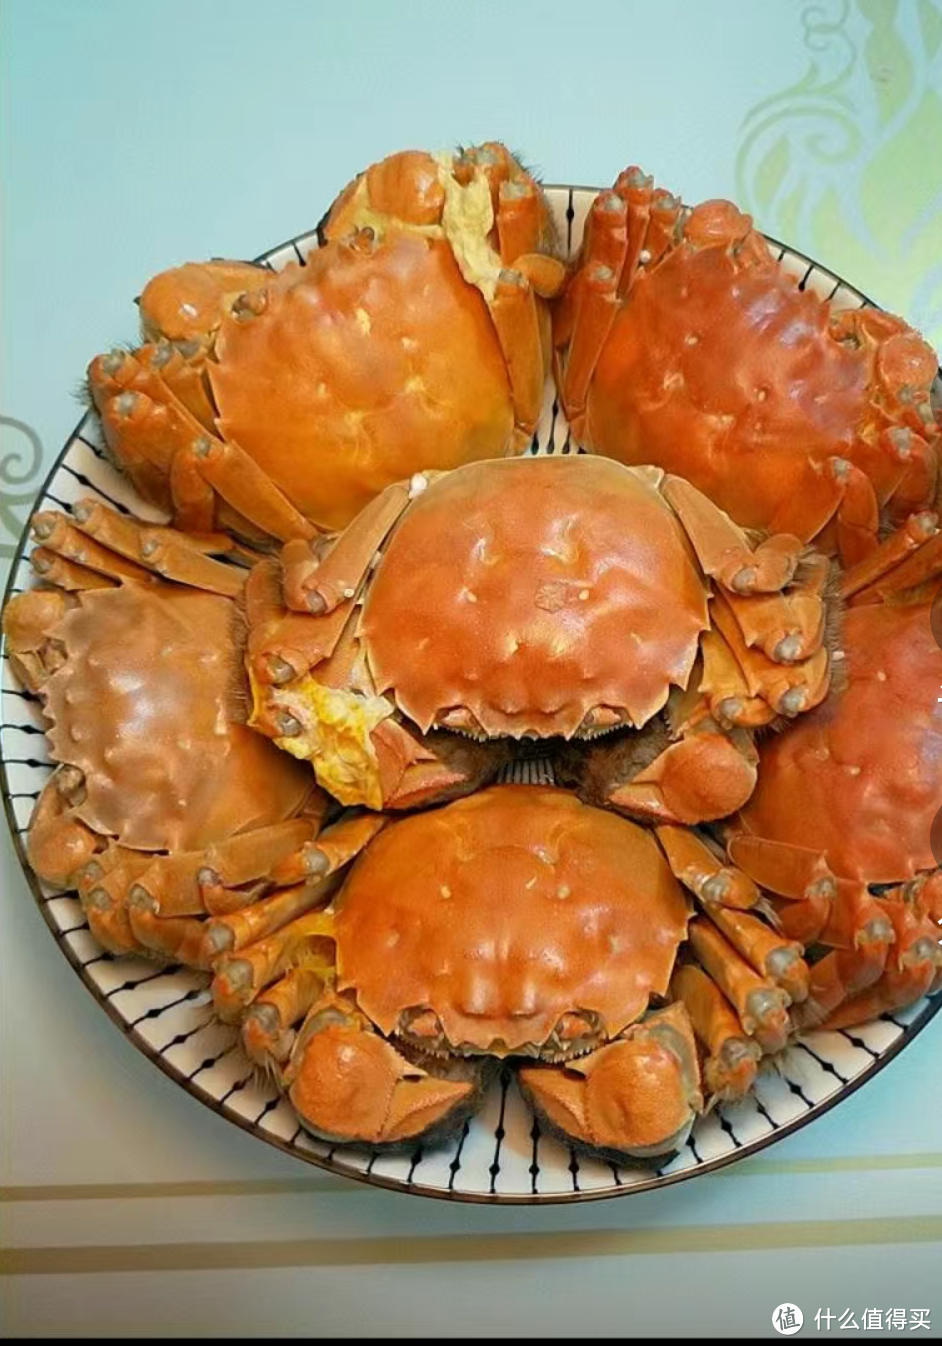 大闸蟹要怎么吃才有营养呢？